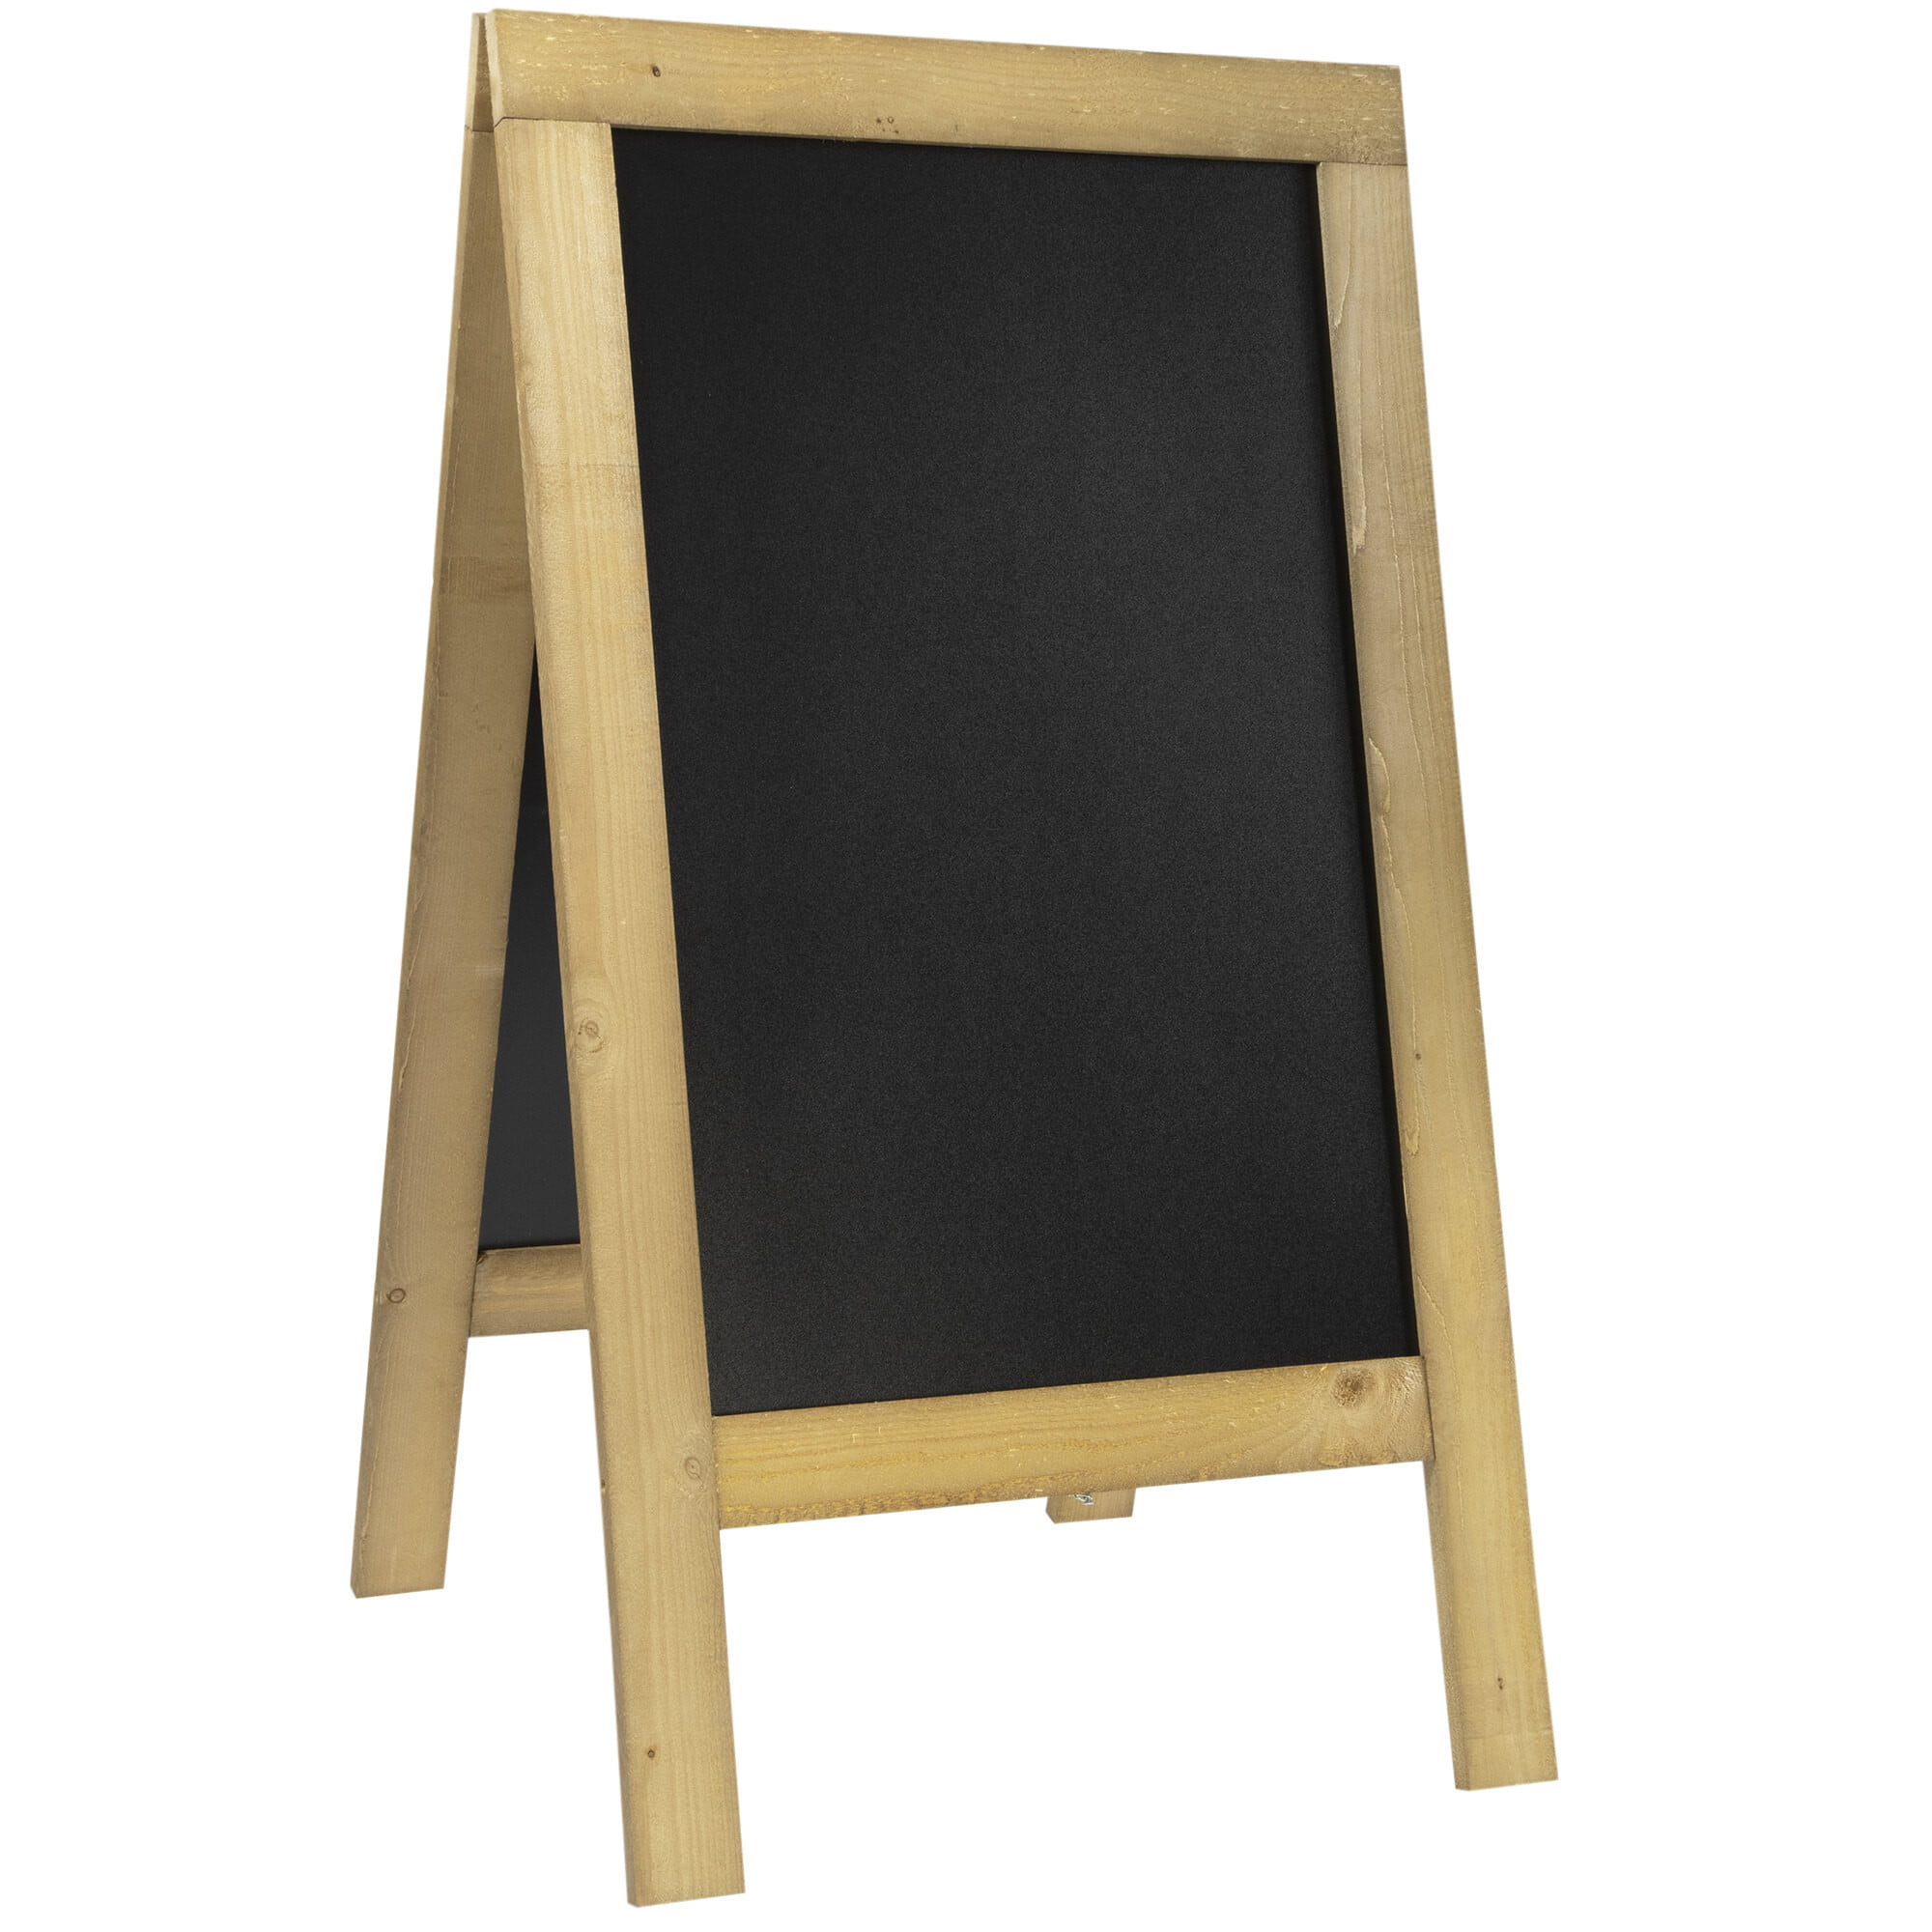 Rustic Wood Framed Chalkboard Natural Jute Hanger 10" x 14" or 14" x 24" 